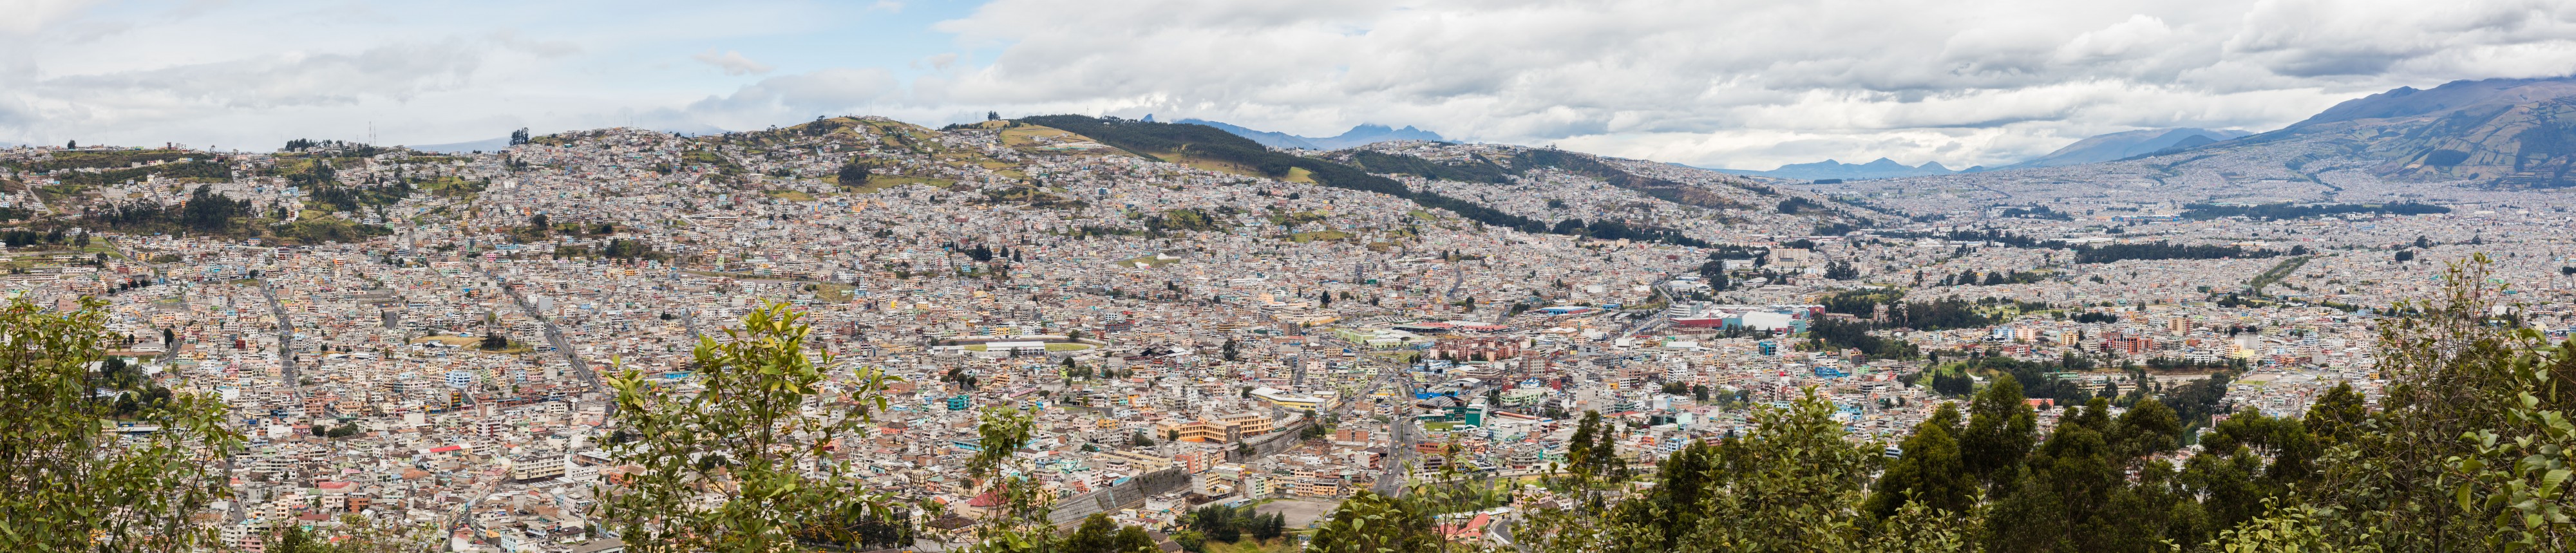 Vista de Quito desde El Panecillo, Ecuador, 2015-07-22, DD 45-49 PAN